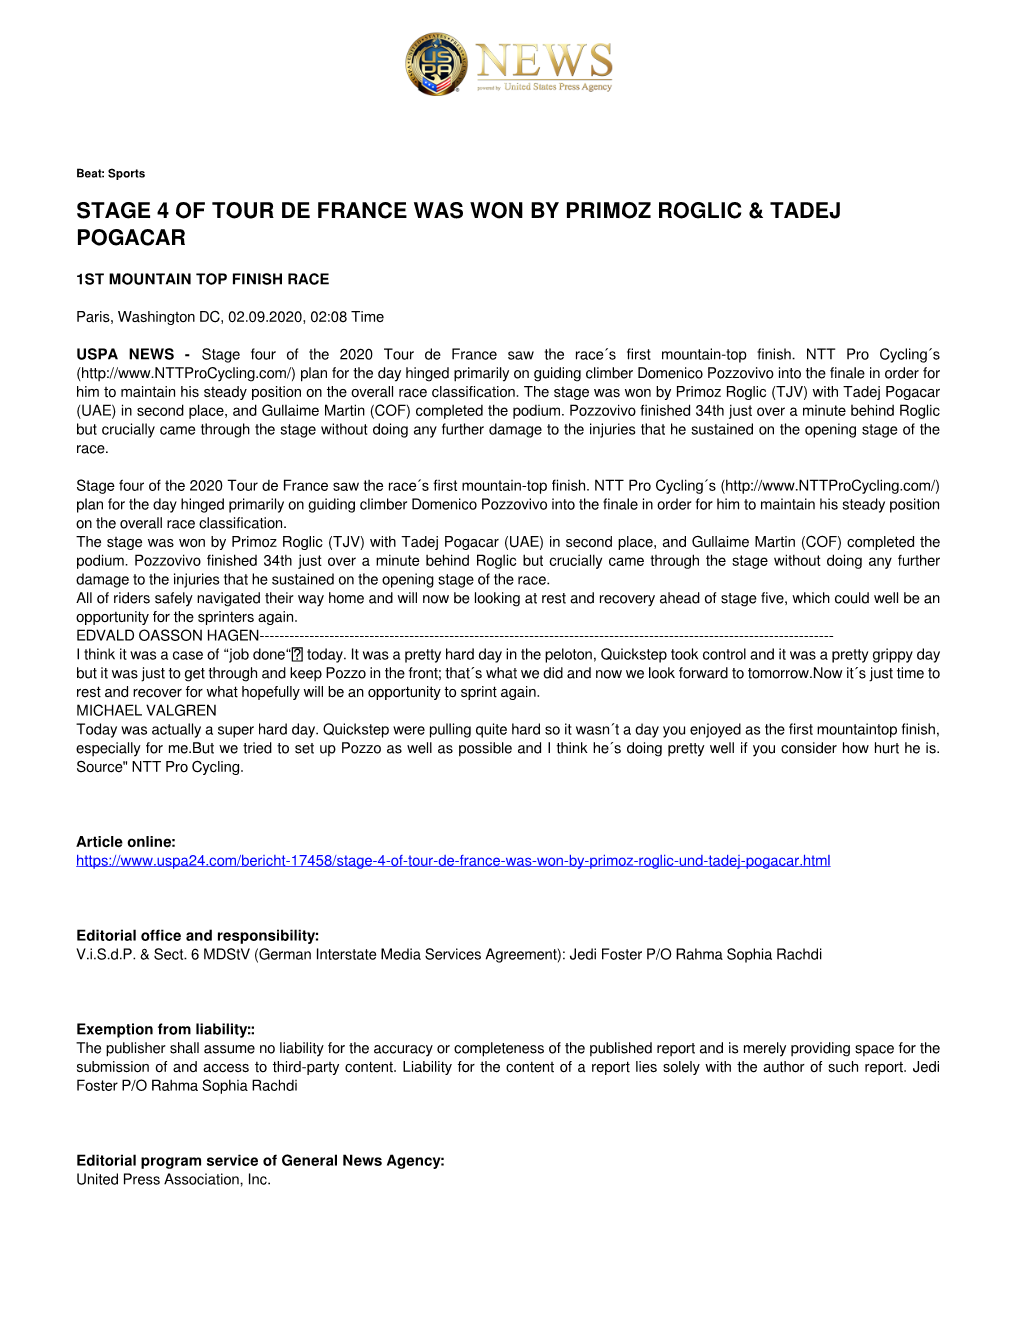 Stage 4 of Tour De France Was Won by Primoz Roglic & Tadej Pogacar